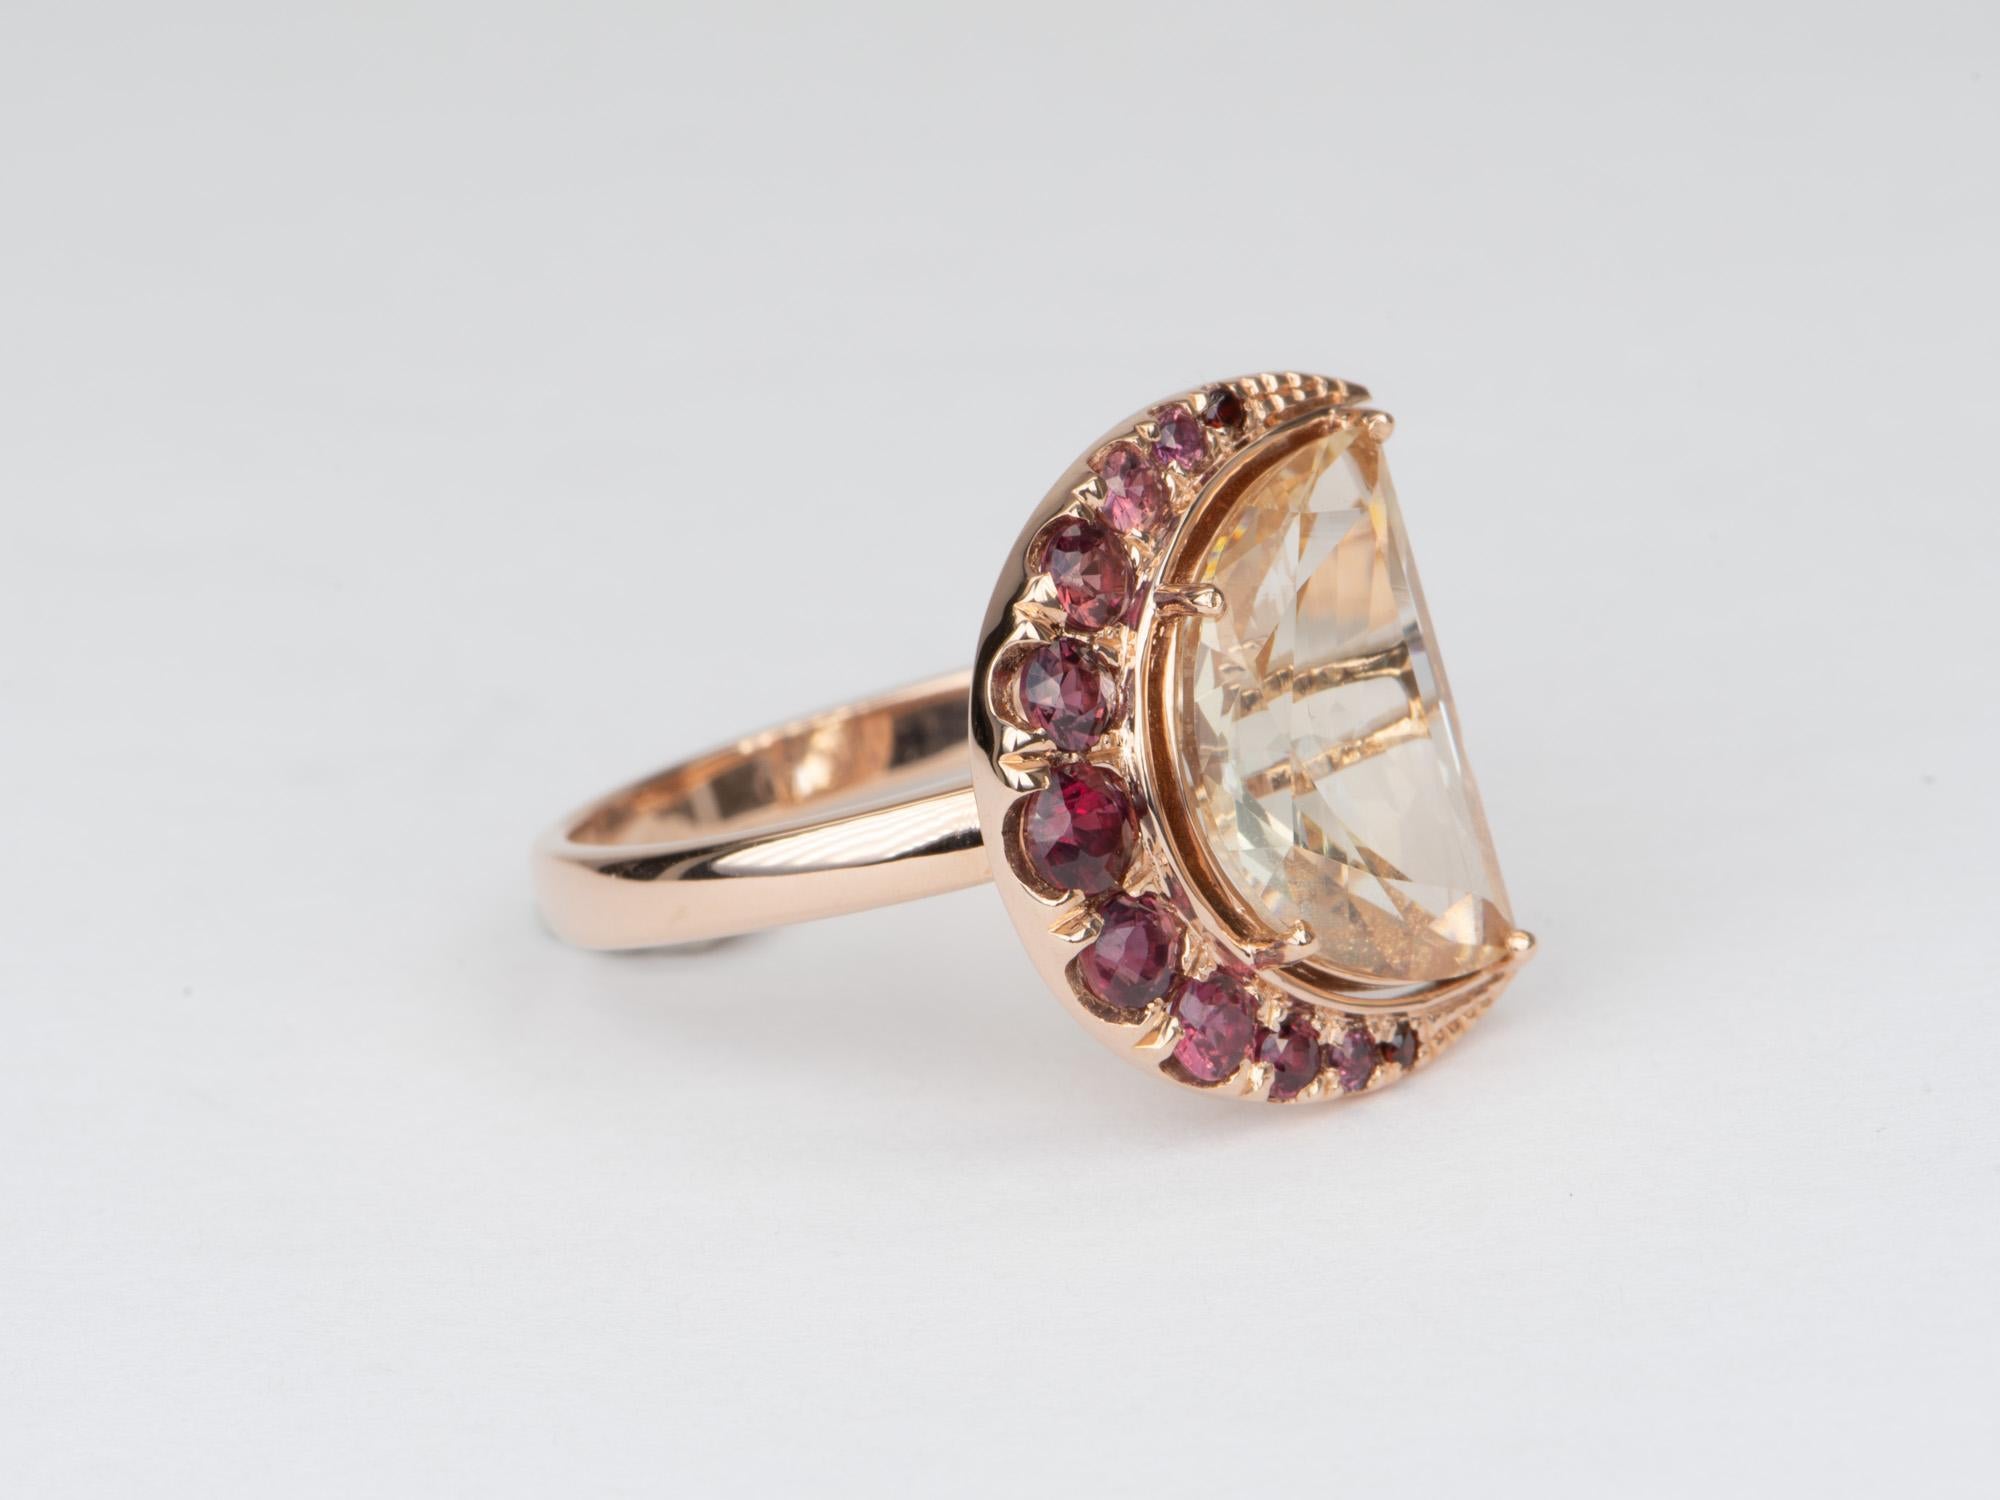 Rose Cut 3.33ct Half Moon Oregon Sunstone with Garnet Halo 14K Rose Gold Ring R6556 For Sale